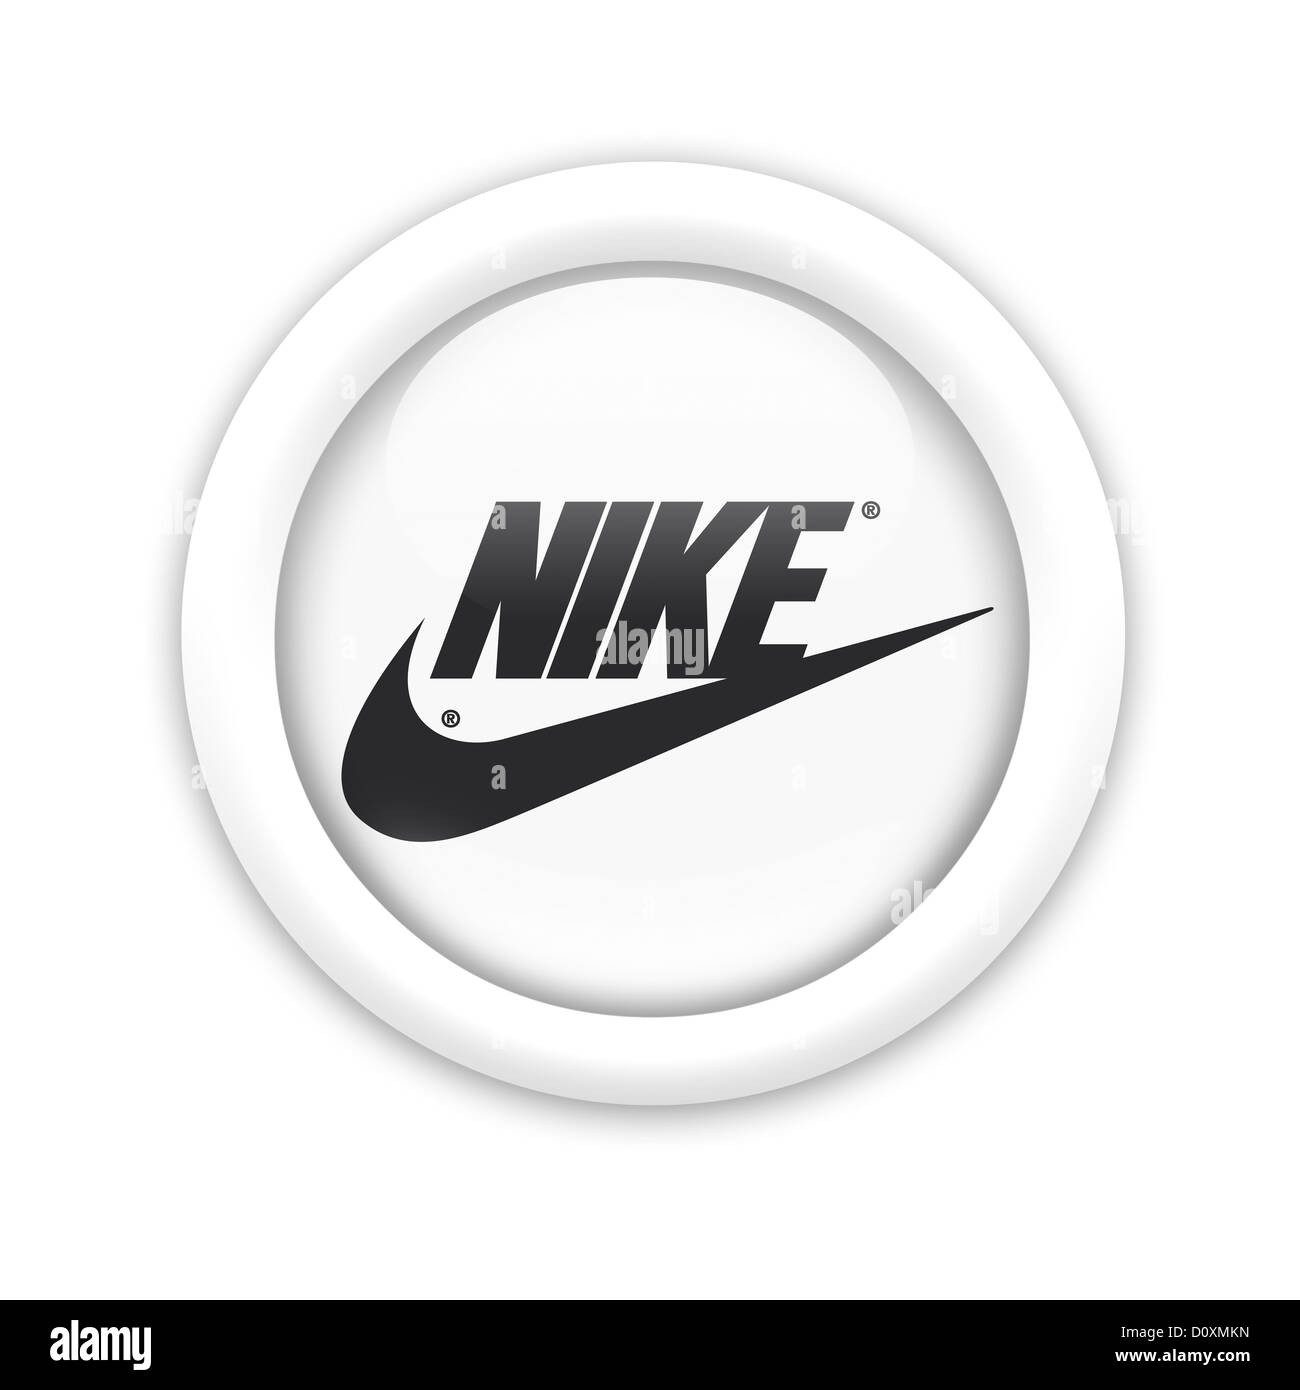 Nike logo symbol flag Stock Photo -